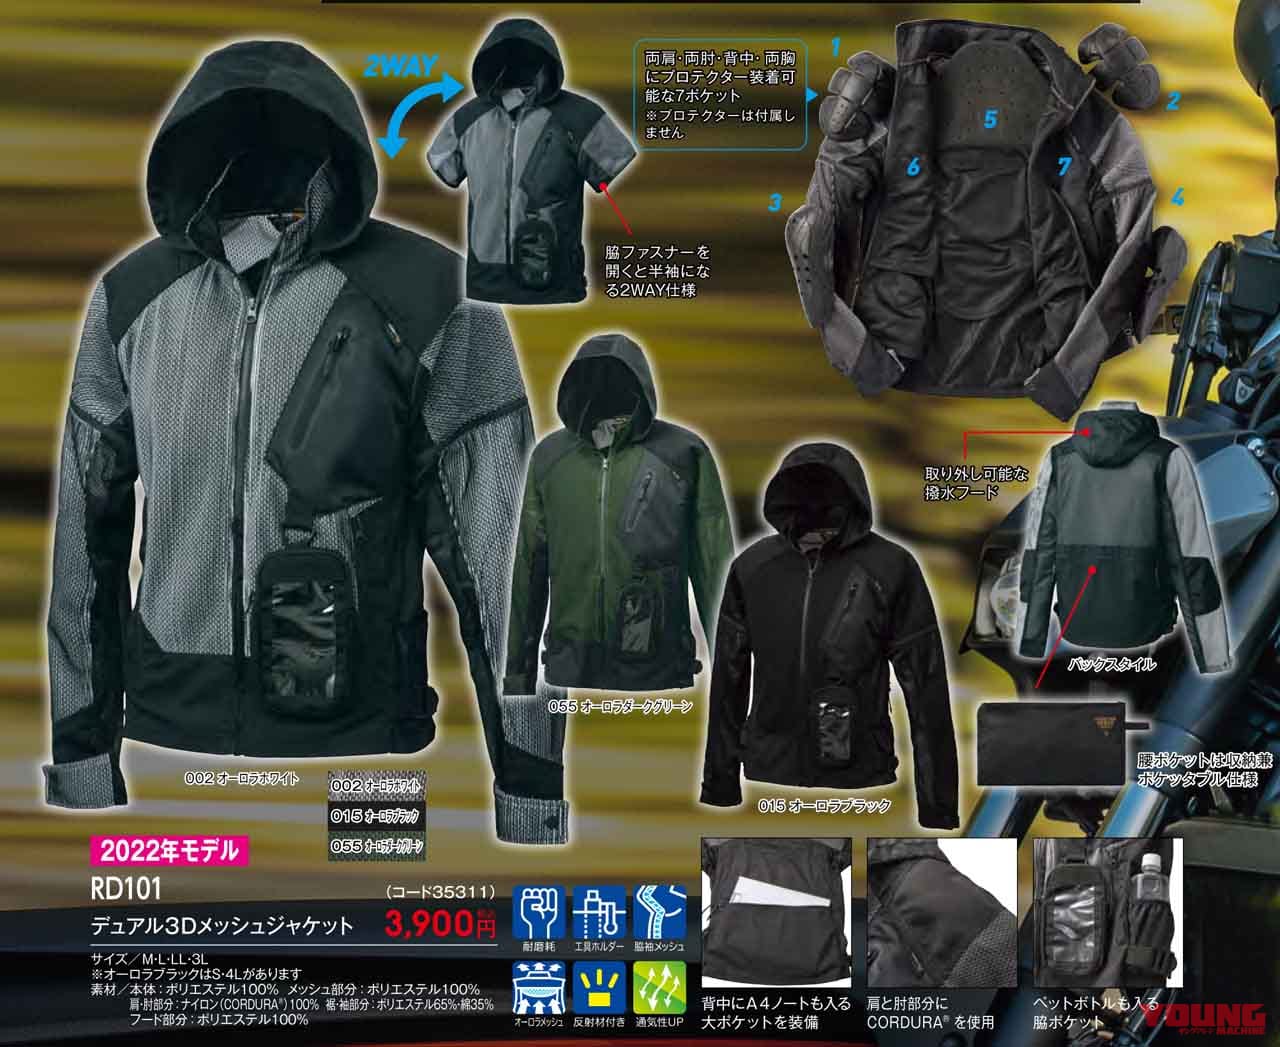 登場大人気アイテム CORDURA®EURO デュアル3Dジャケット グリーン⭐️新品⭐️